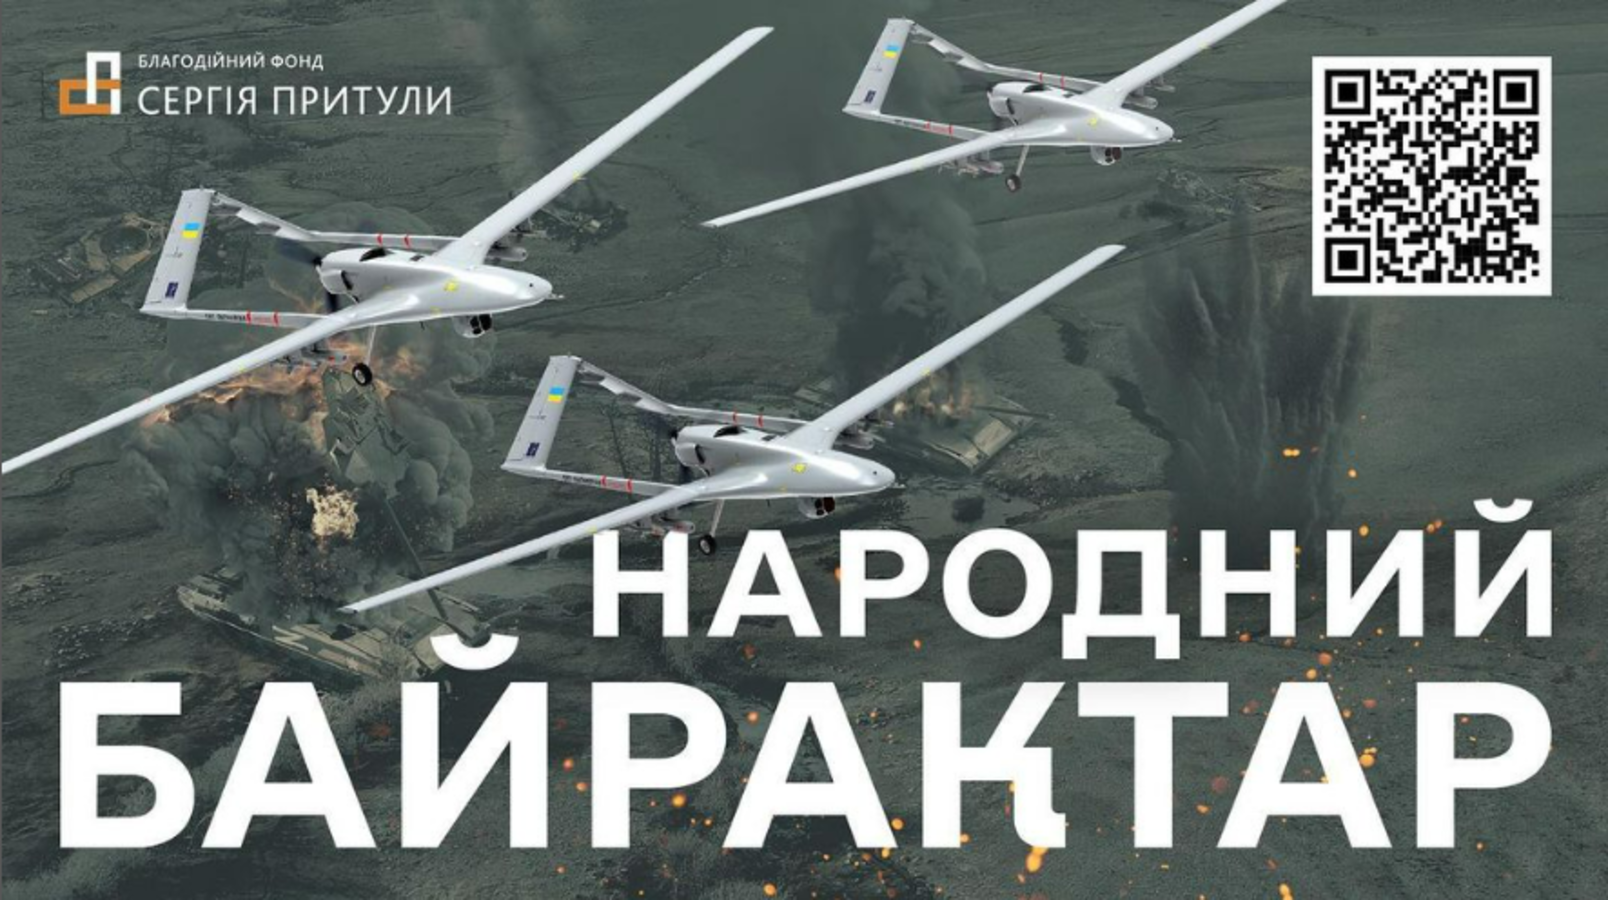 Українці за добу назбирали гроші на два «Байрактари» для ЗСУ - 1 - изображение